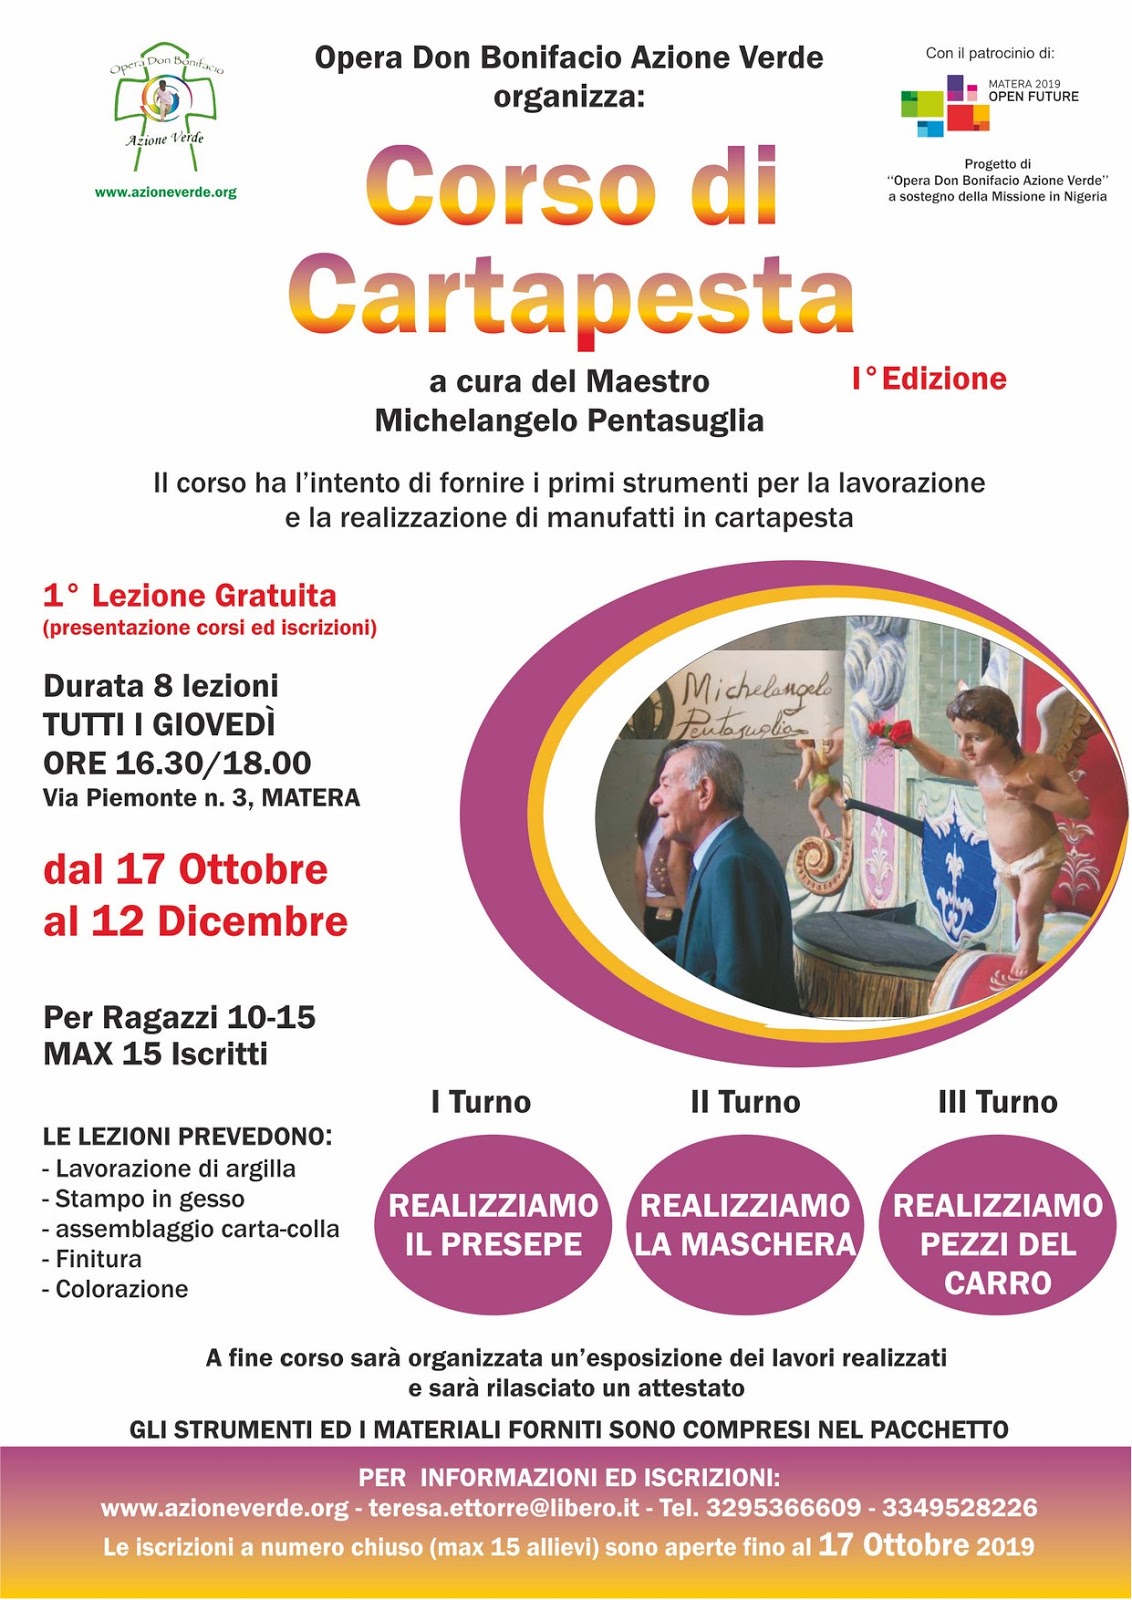 Nella città dei Sassi la prima edizione del Corso di Cartapesta promosso da Opera Don Bonifacio Azione Verde